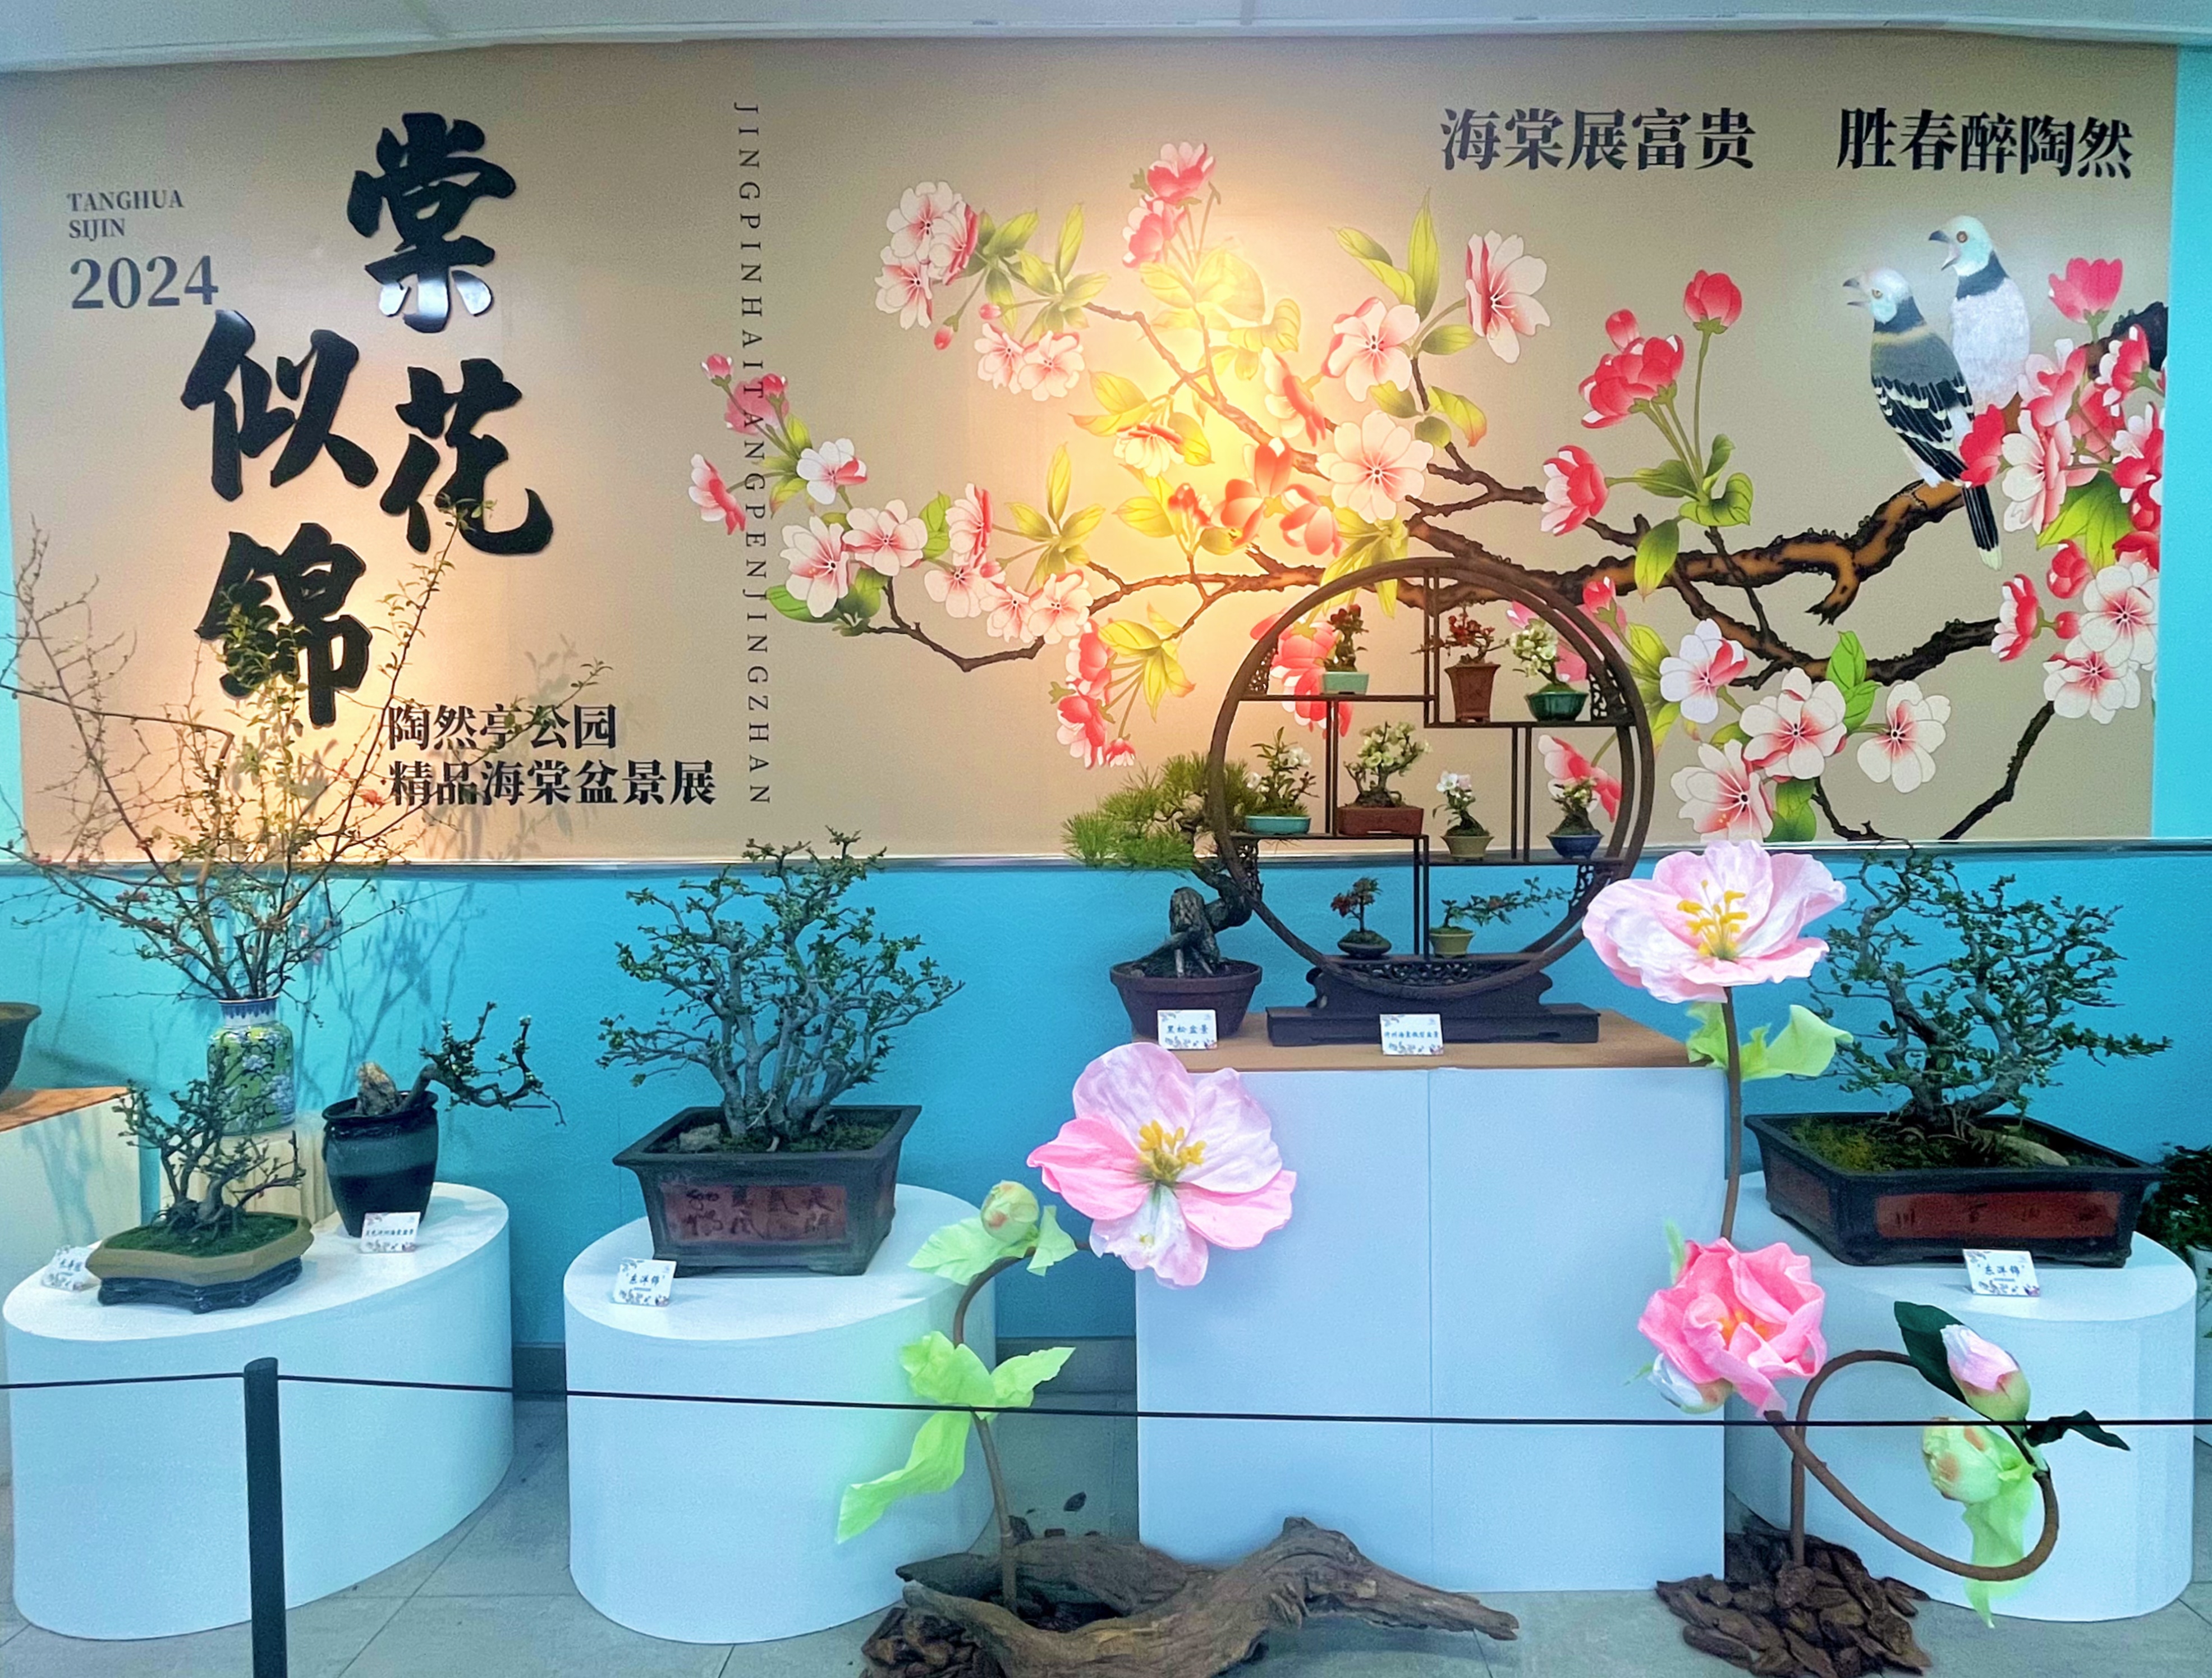 北京陶然亭公园第九届海棠春花文化节即将开幕